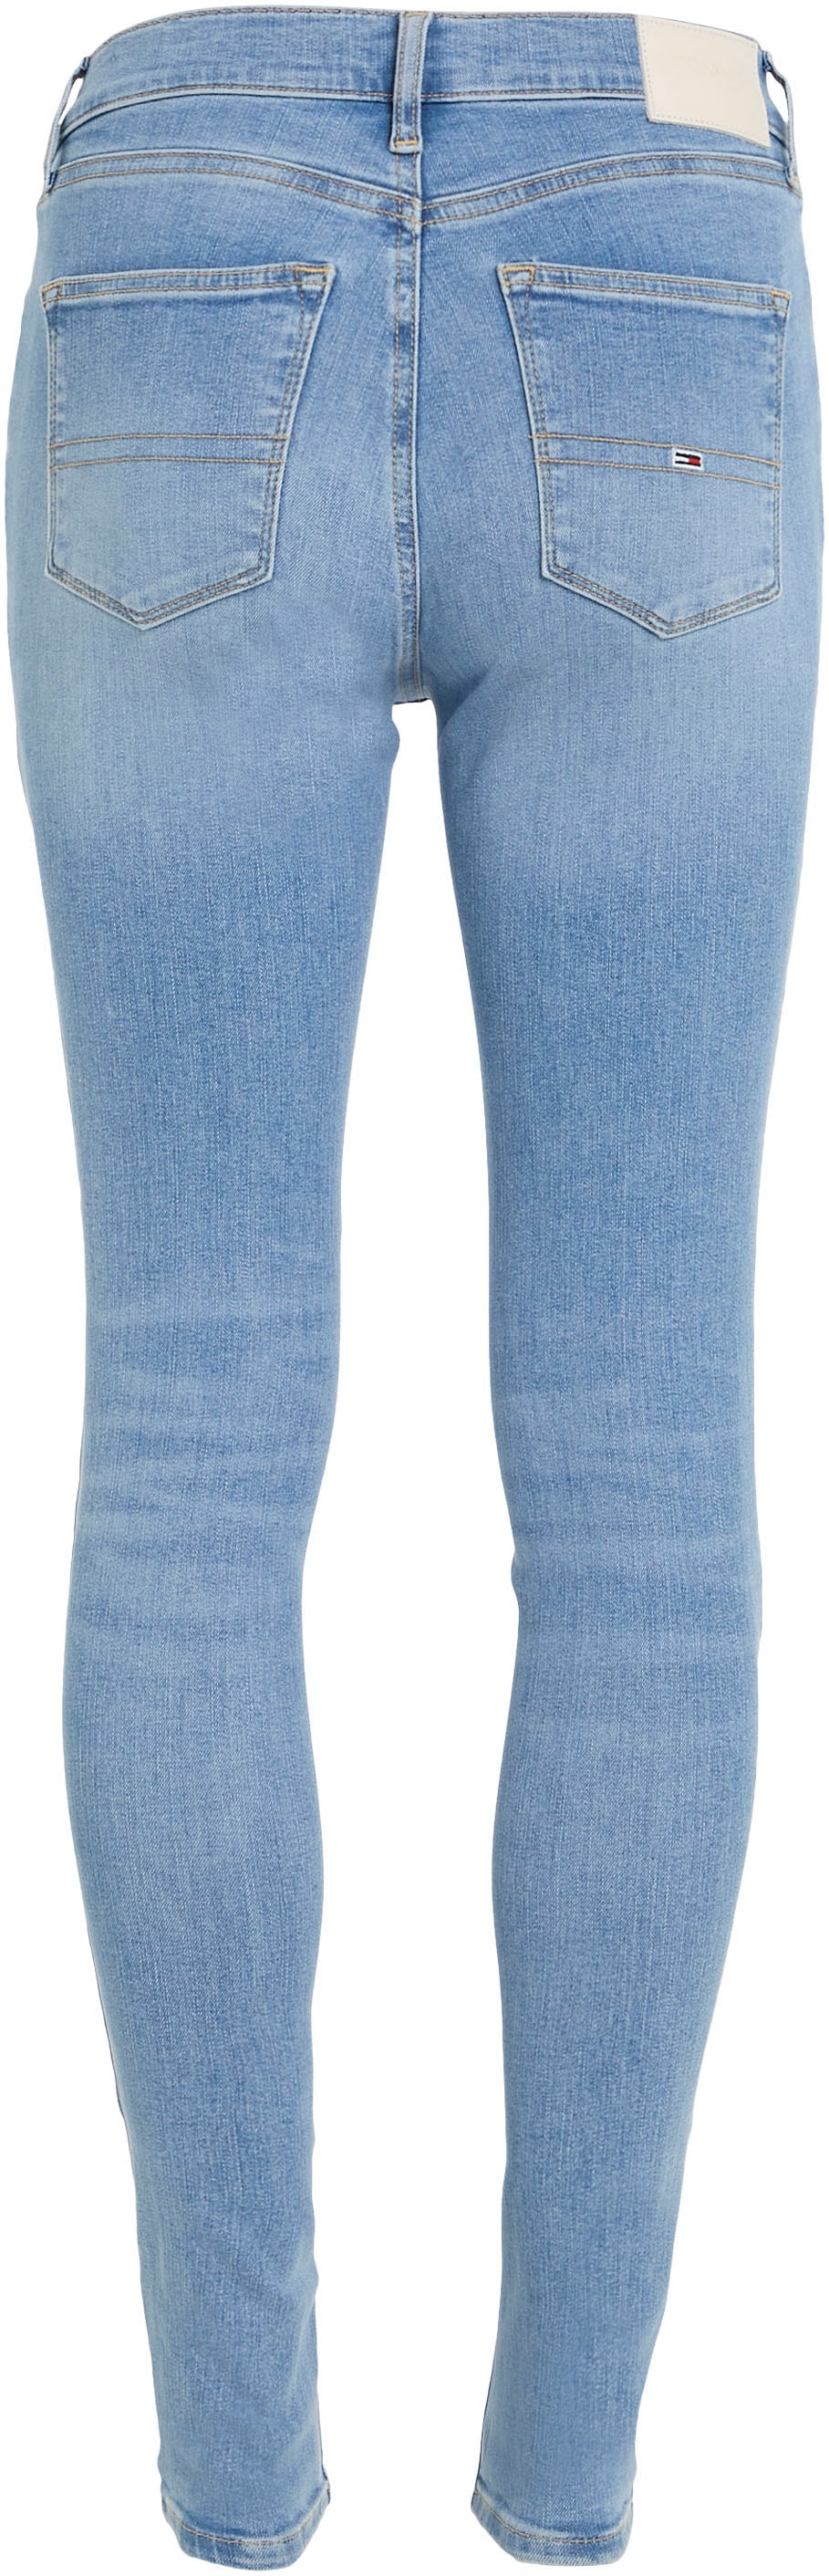 Jeans dezenten Skinny-fit-Jeans, mit Tommy shoppen Labelapplikationen